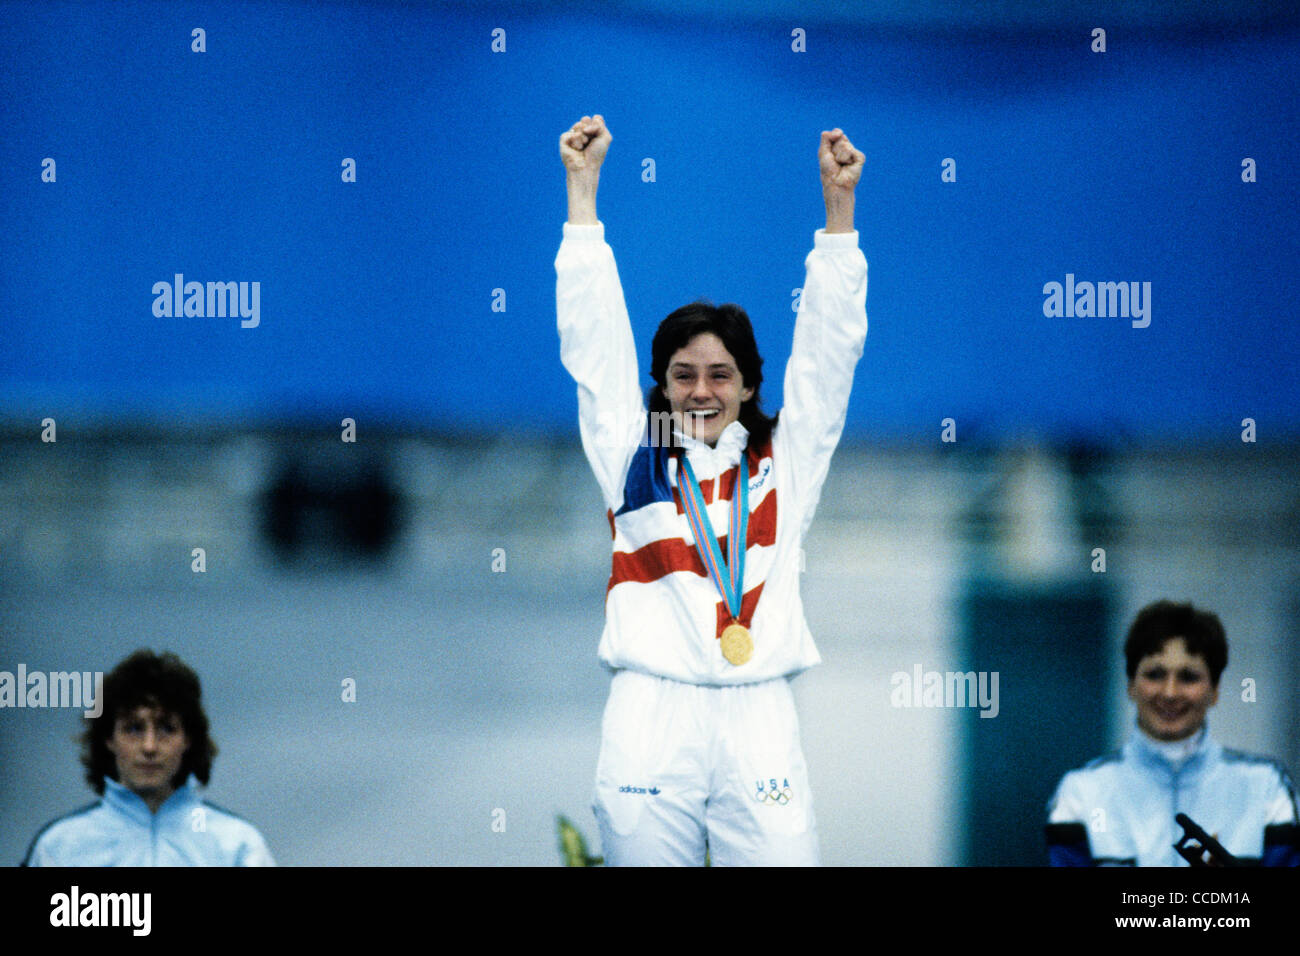 Bonnie BLAIR USA médaillé d'or aux 500m aux Jeux Olympiques d'hiver 1988 Banque D'Images